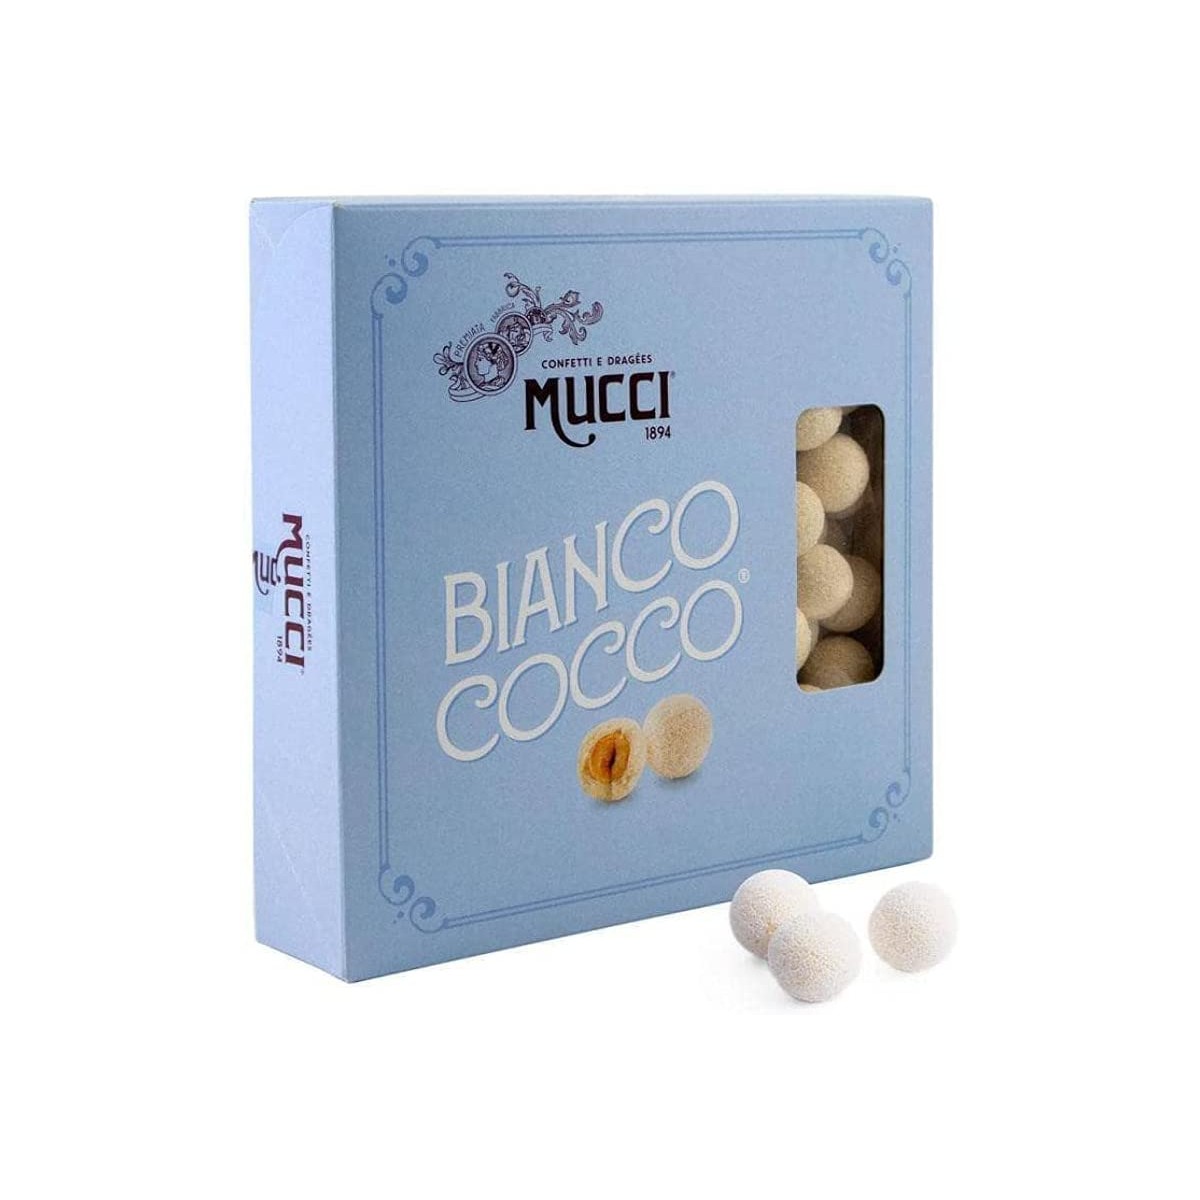 Confetti Bianco Cocco - Mucci Giovanni, con cioccolato